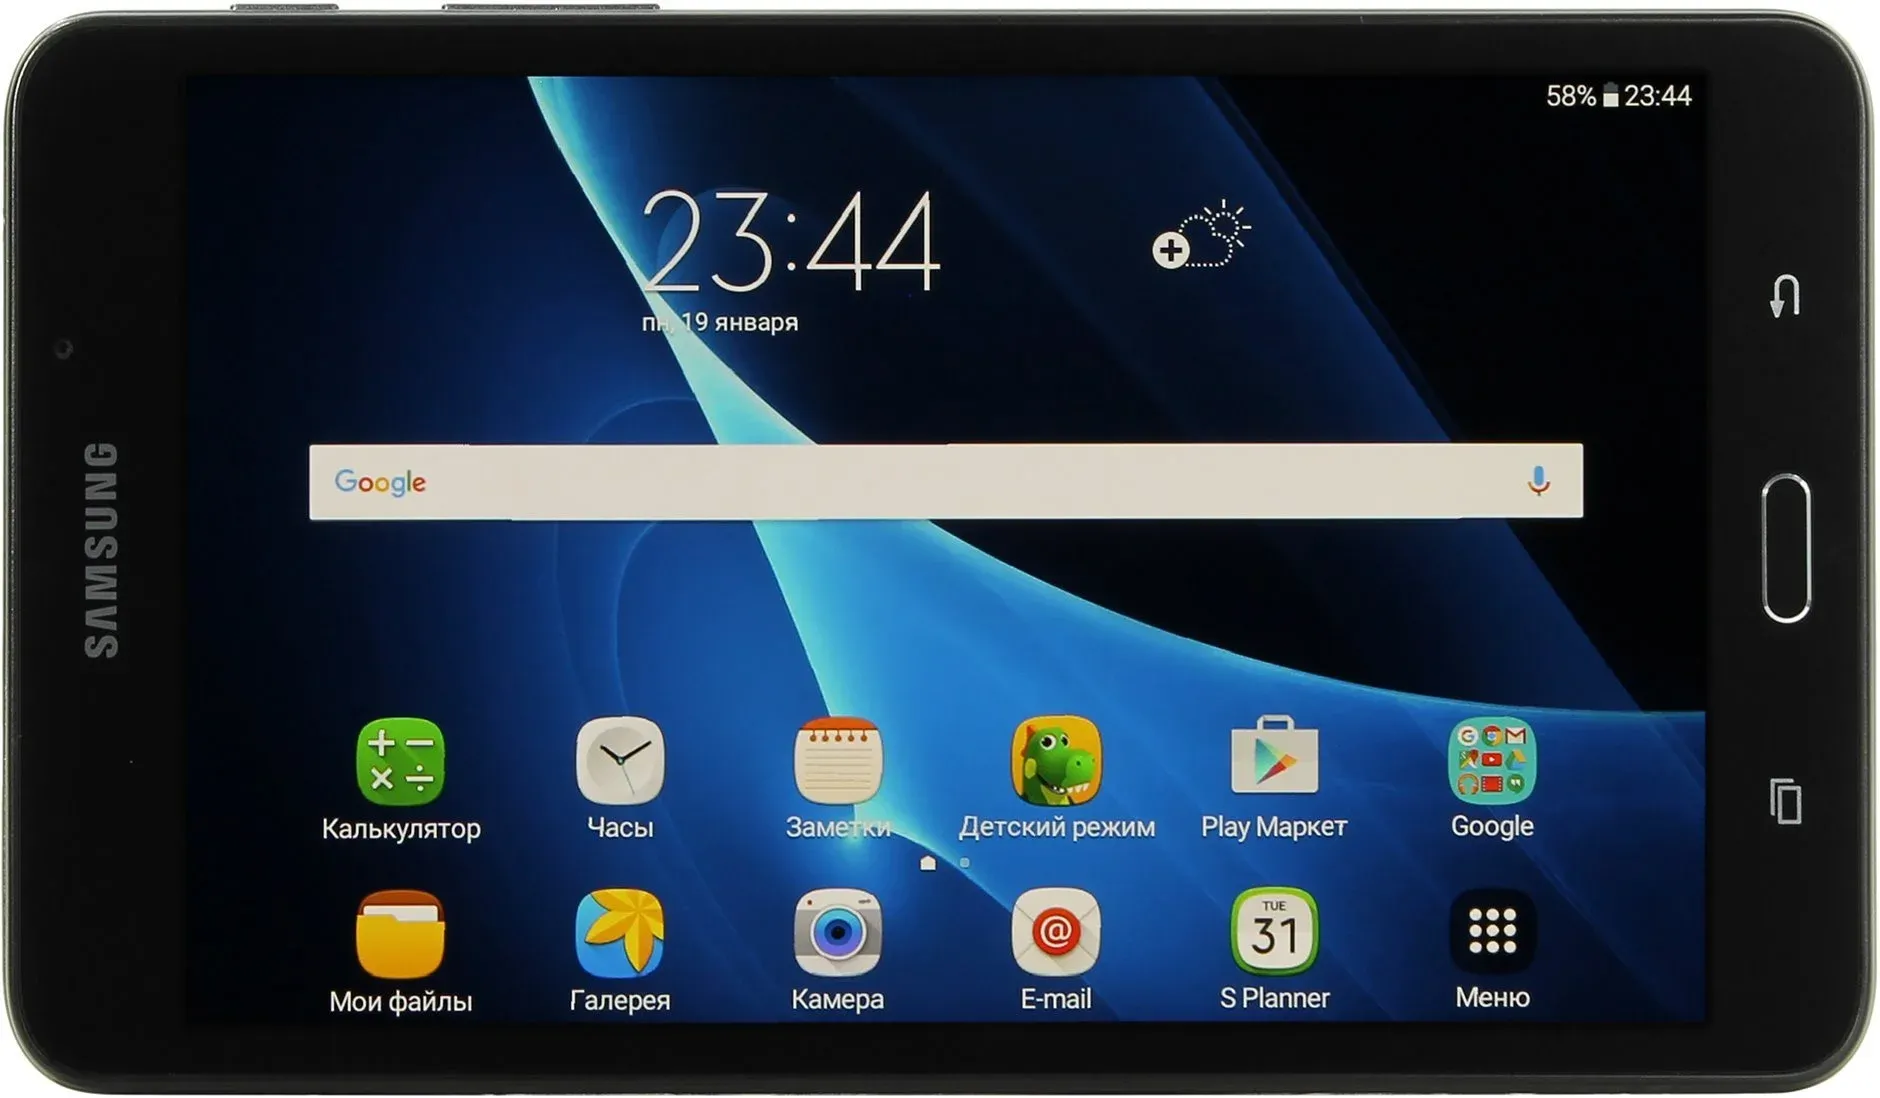 Samsung 2 7.0. Планшет Samsung Galaxy Tab a 7.0. Samsung Galaxy Tab a SM t280. Samsung Galaxy Tab a 7.0 SM-t280. Samsung Galaxy Tab a6 SM-t280.